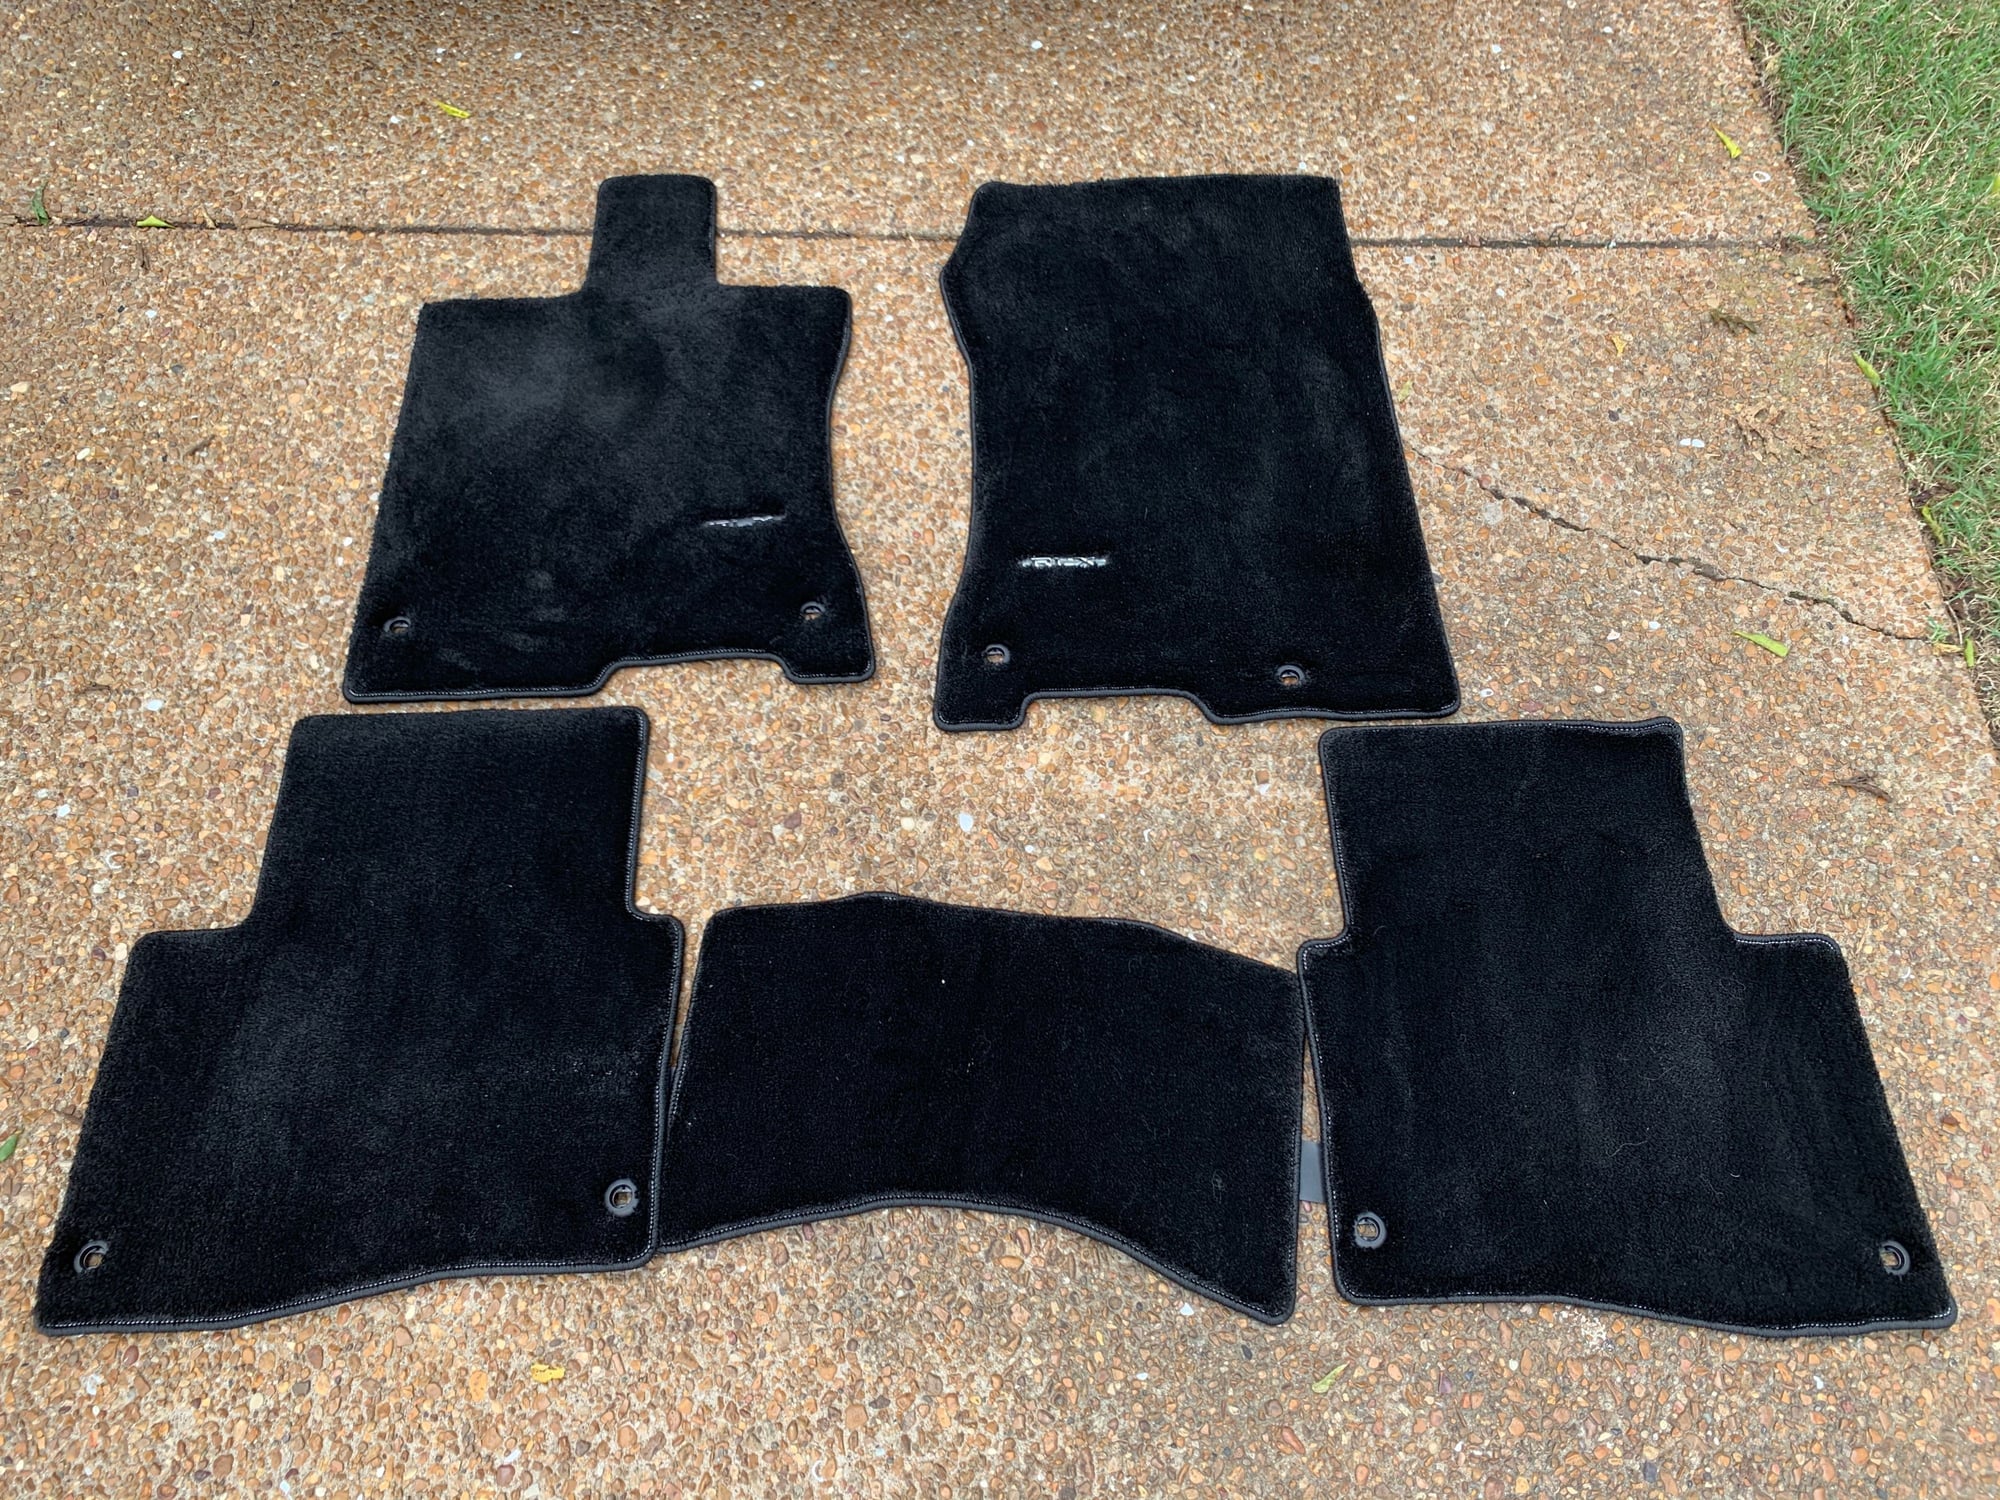 Interior/Upholstery - FS: Acura RLX OEM Premium Floor Mat Set - Used - 2018 to 2020 Acura RLX - Nashville, TN 37205, United States